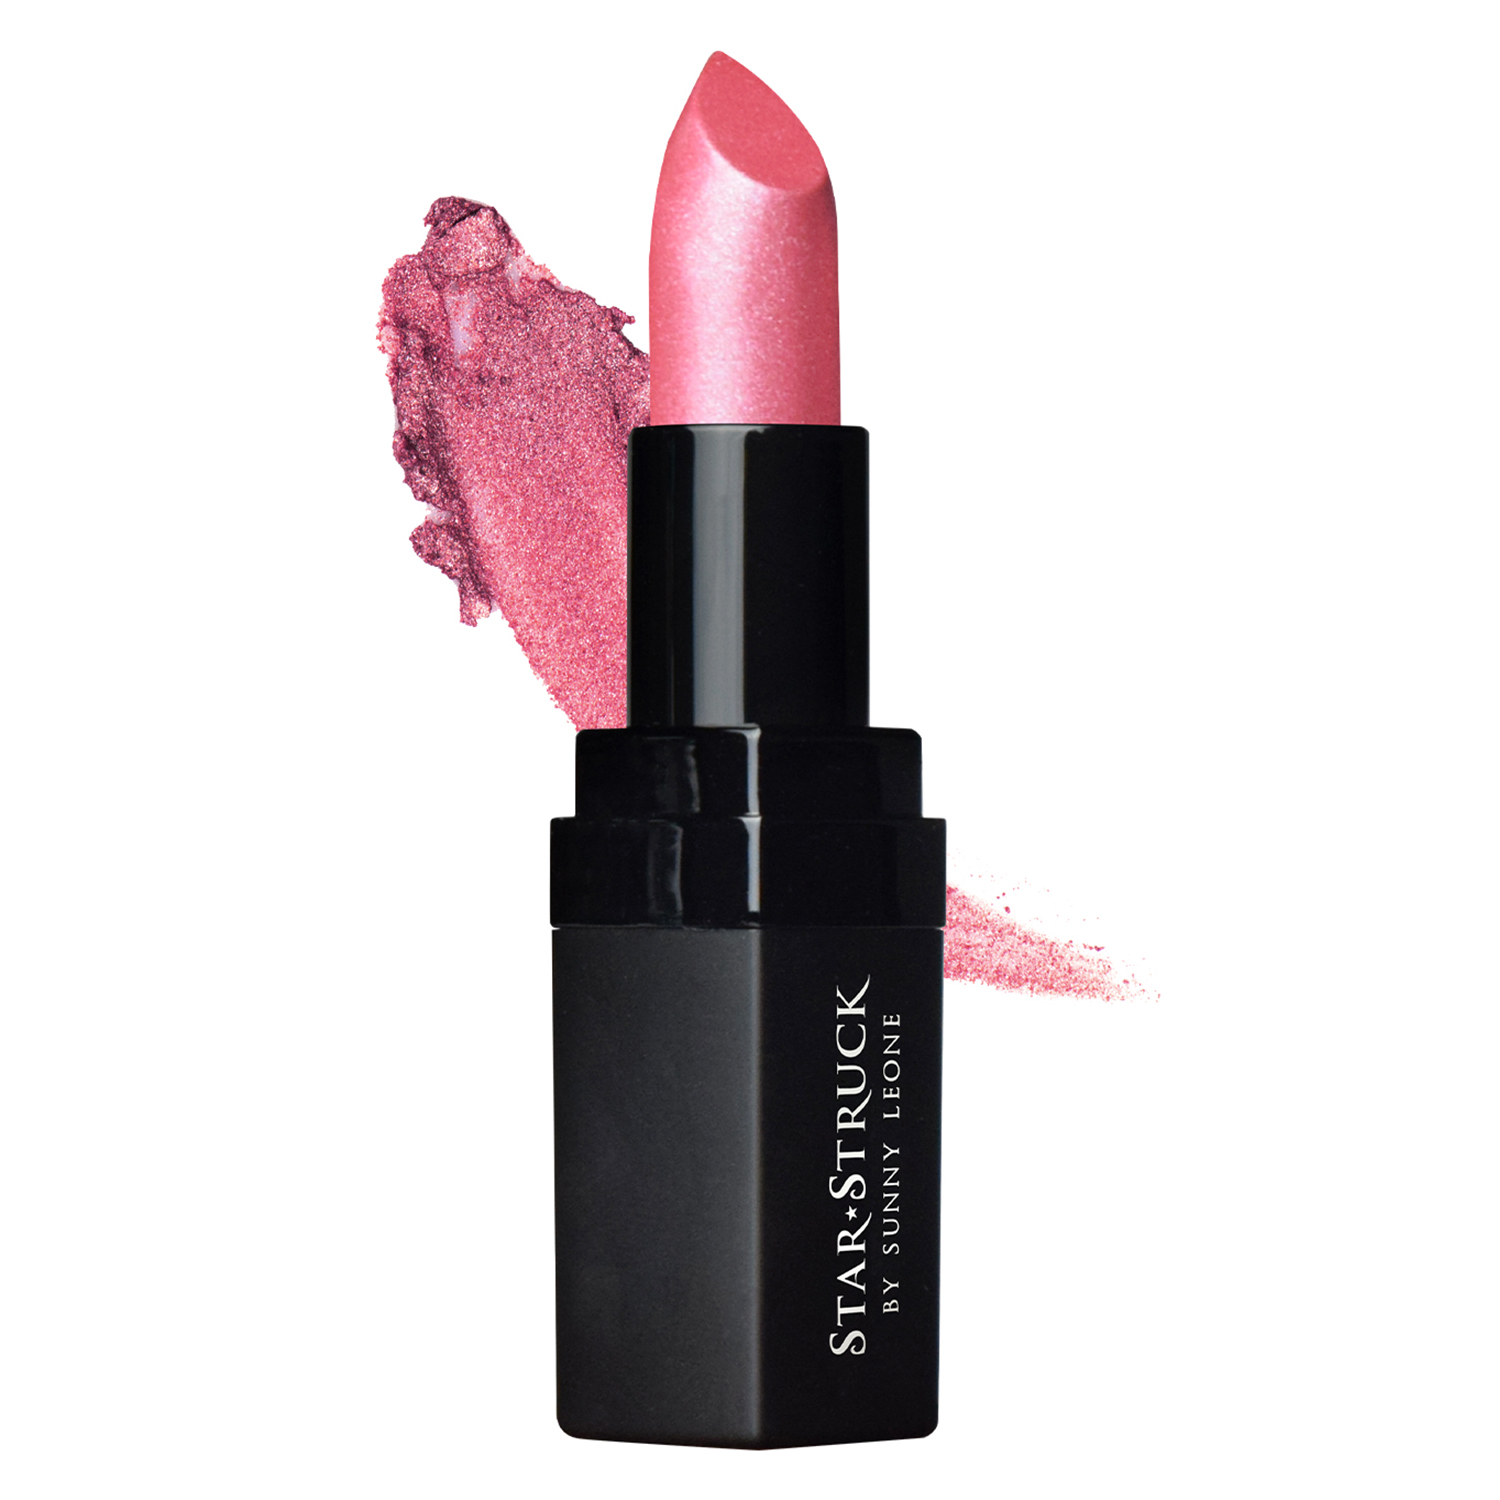 Star Struck by Sunny Leone Intense Matte Lipstick, 4.45gm-Lip Color - Berry Glimmer